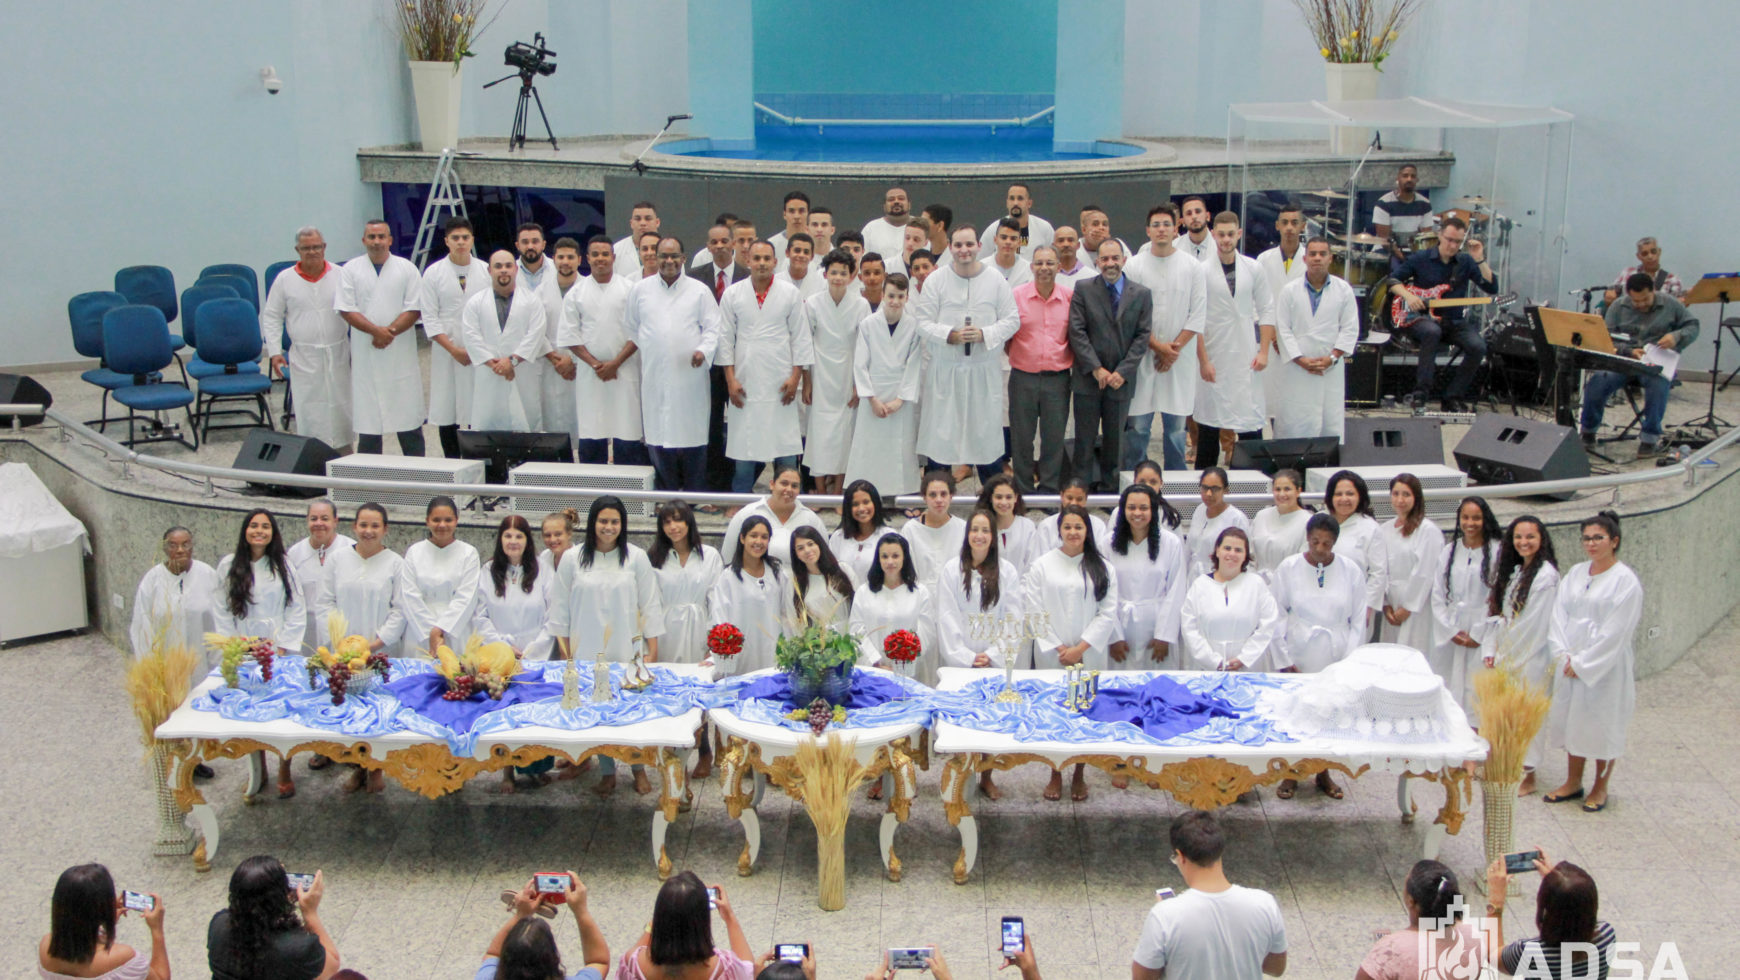 Com feito inédito, ADSA Brasil realiza o 1º Batismo nas Águas de 2018